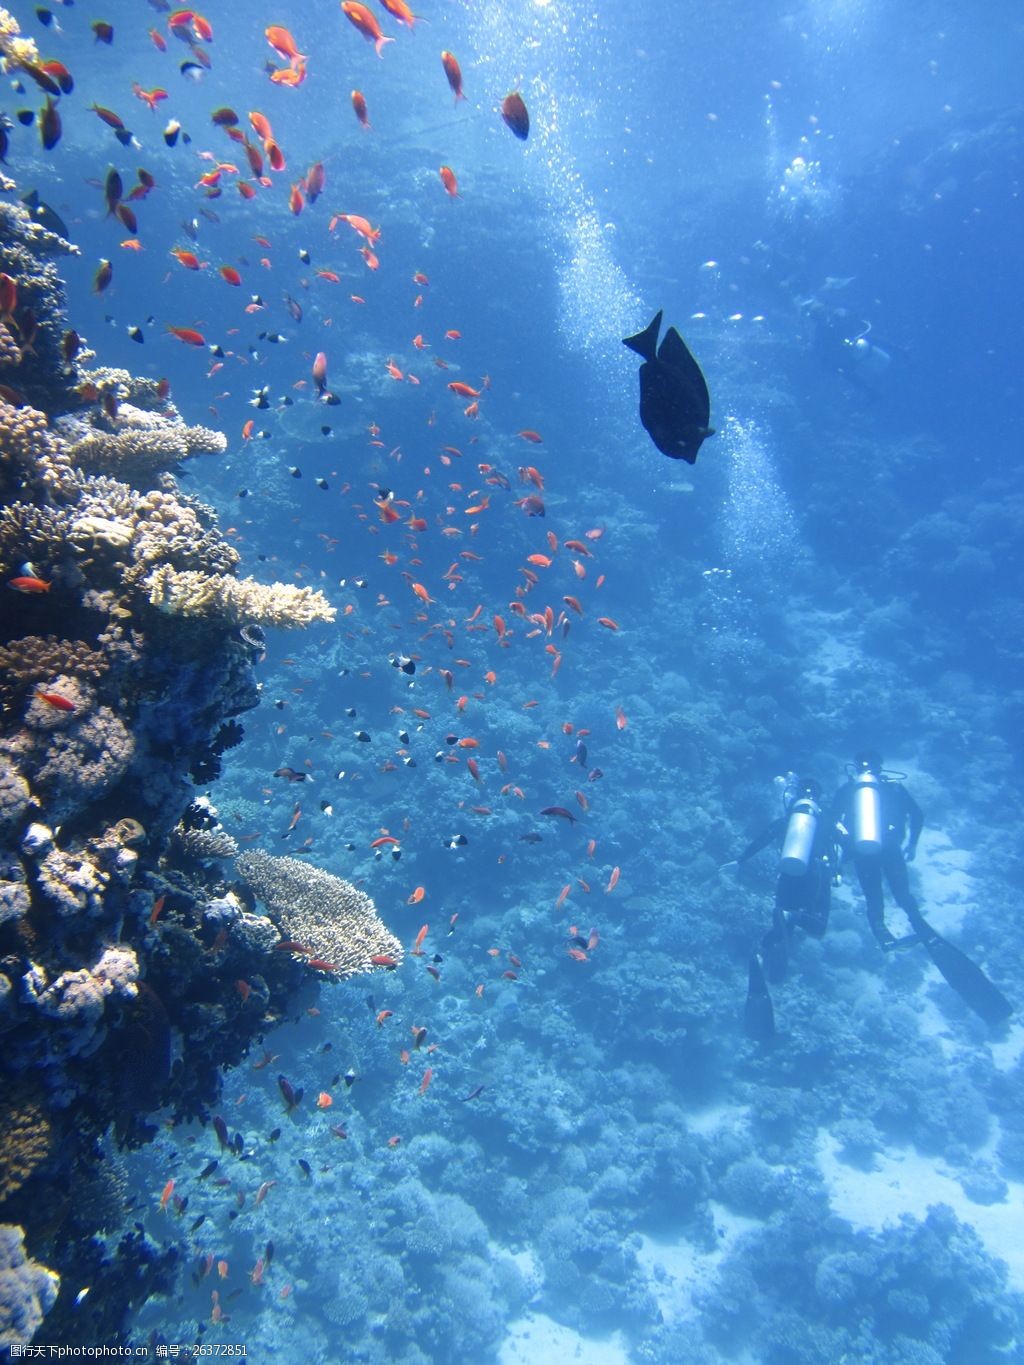 设计图库 高清素材 动植物  关键词:真实海底世界高清图片下载 海底